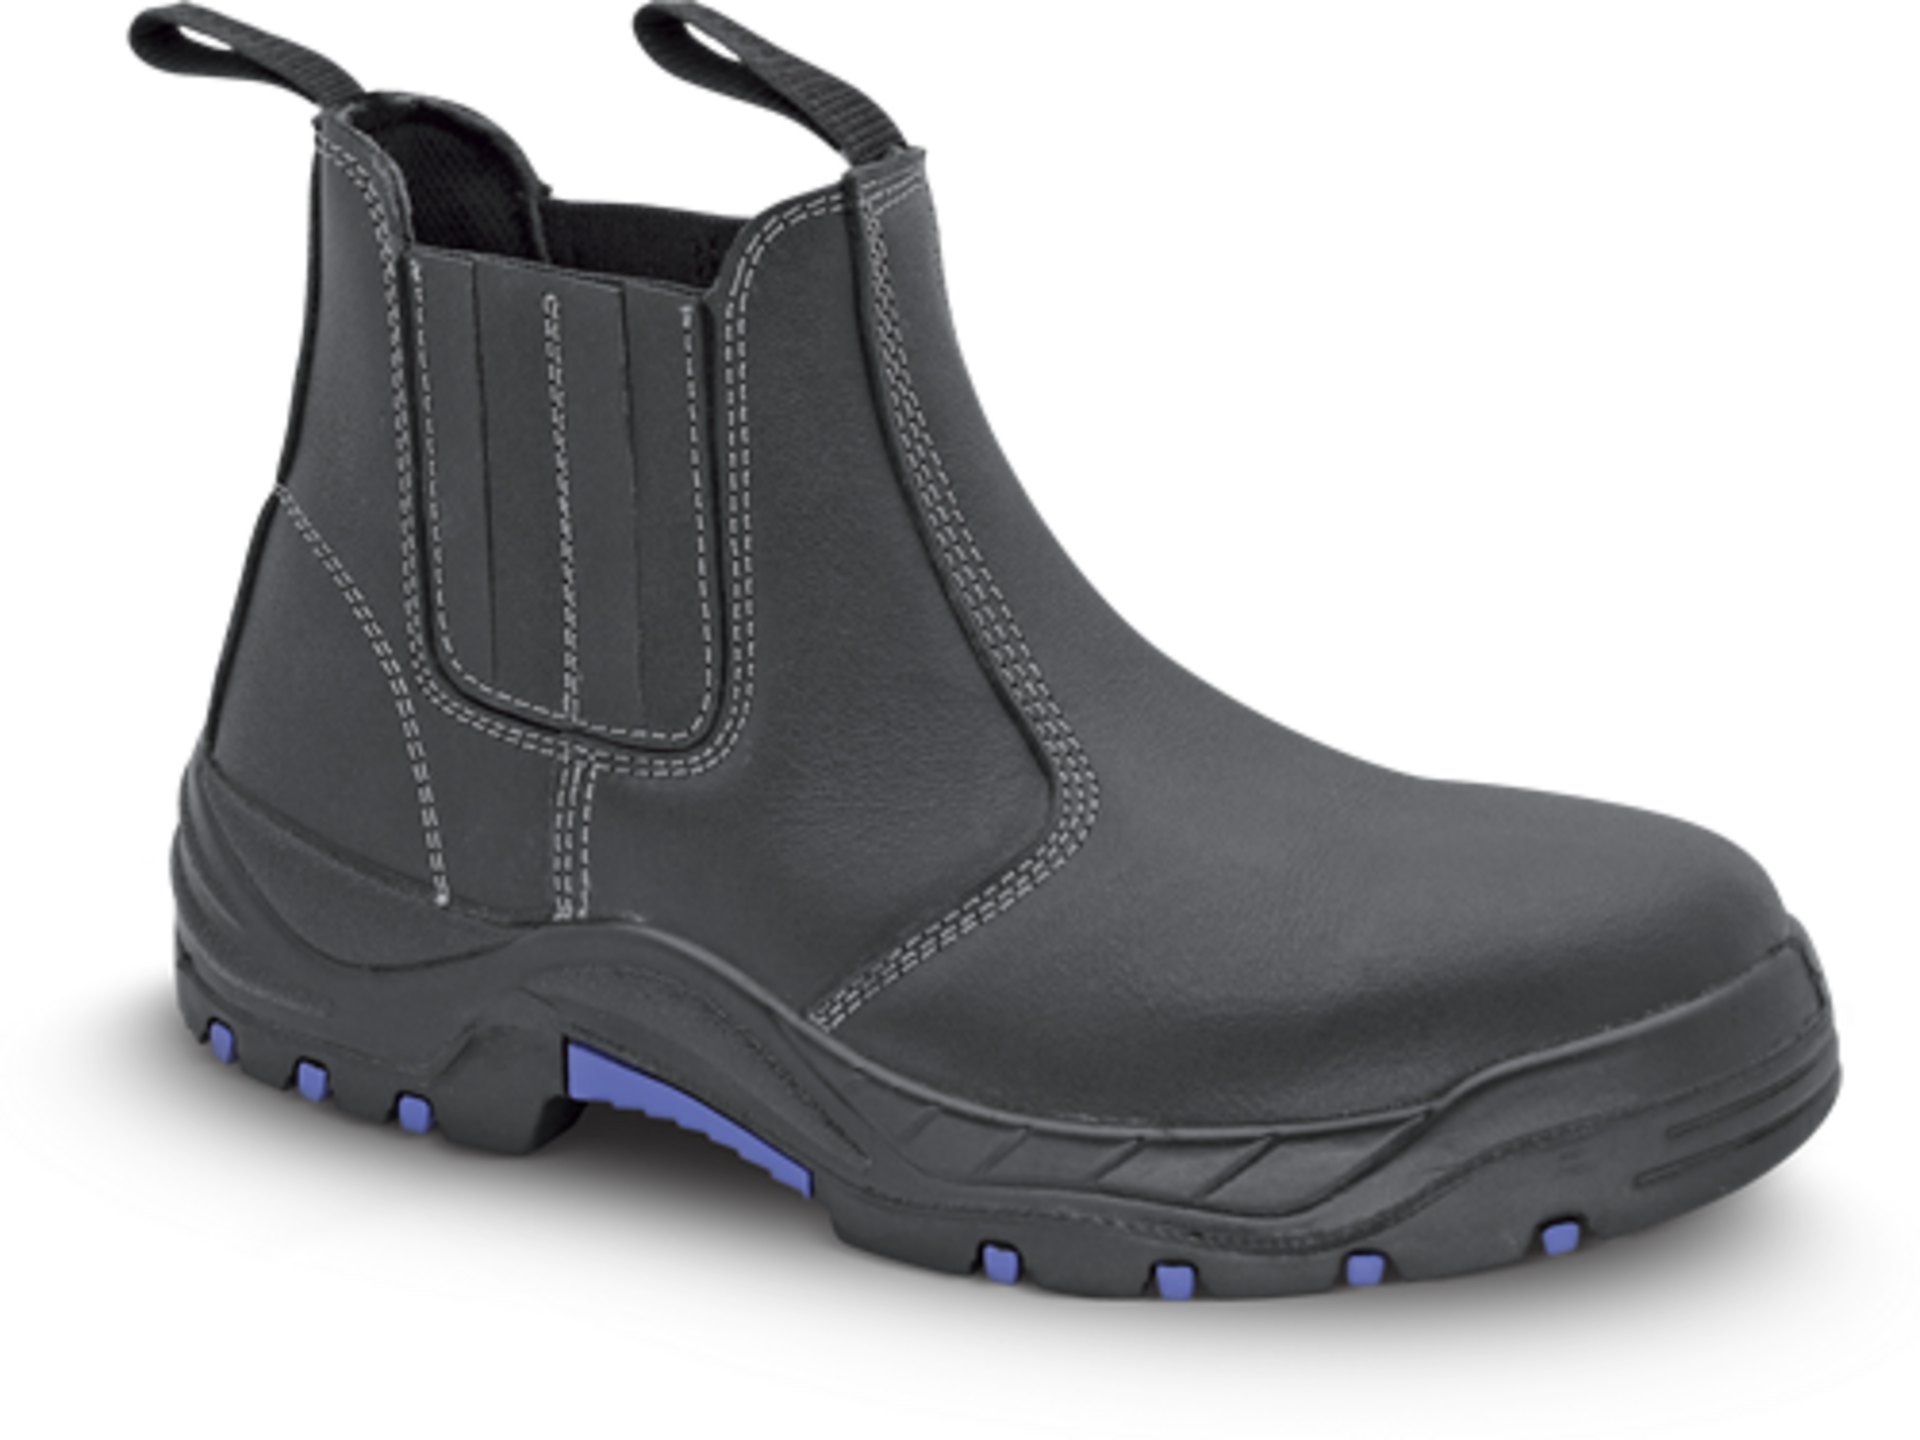 VM Footwear VM QUITO S1 2490 do 300°C černá Obuv kotníková 43